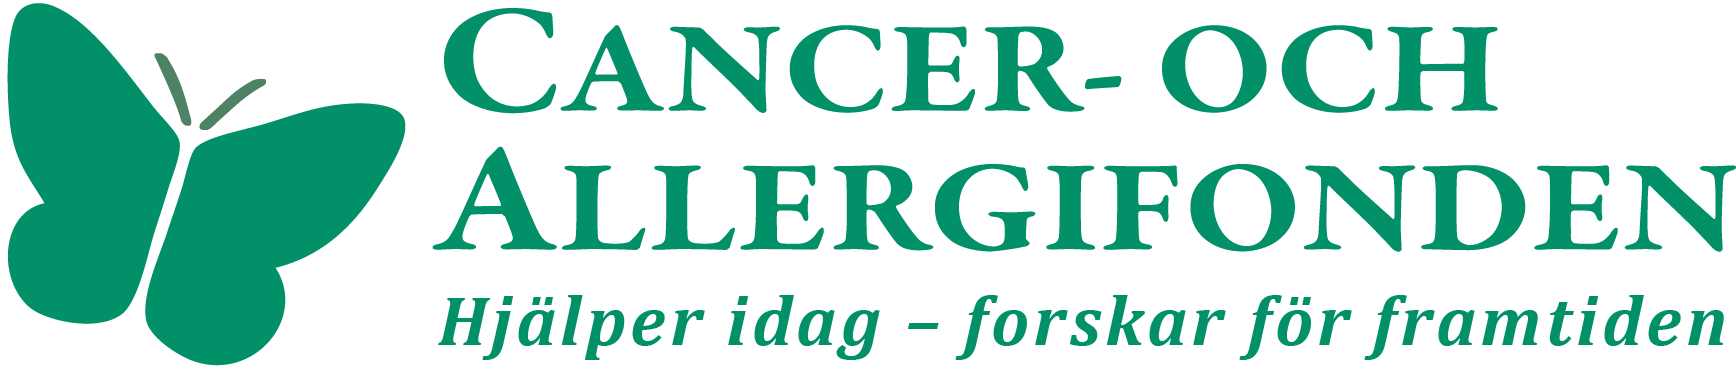 Cancer- och Allergifondens logotyp